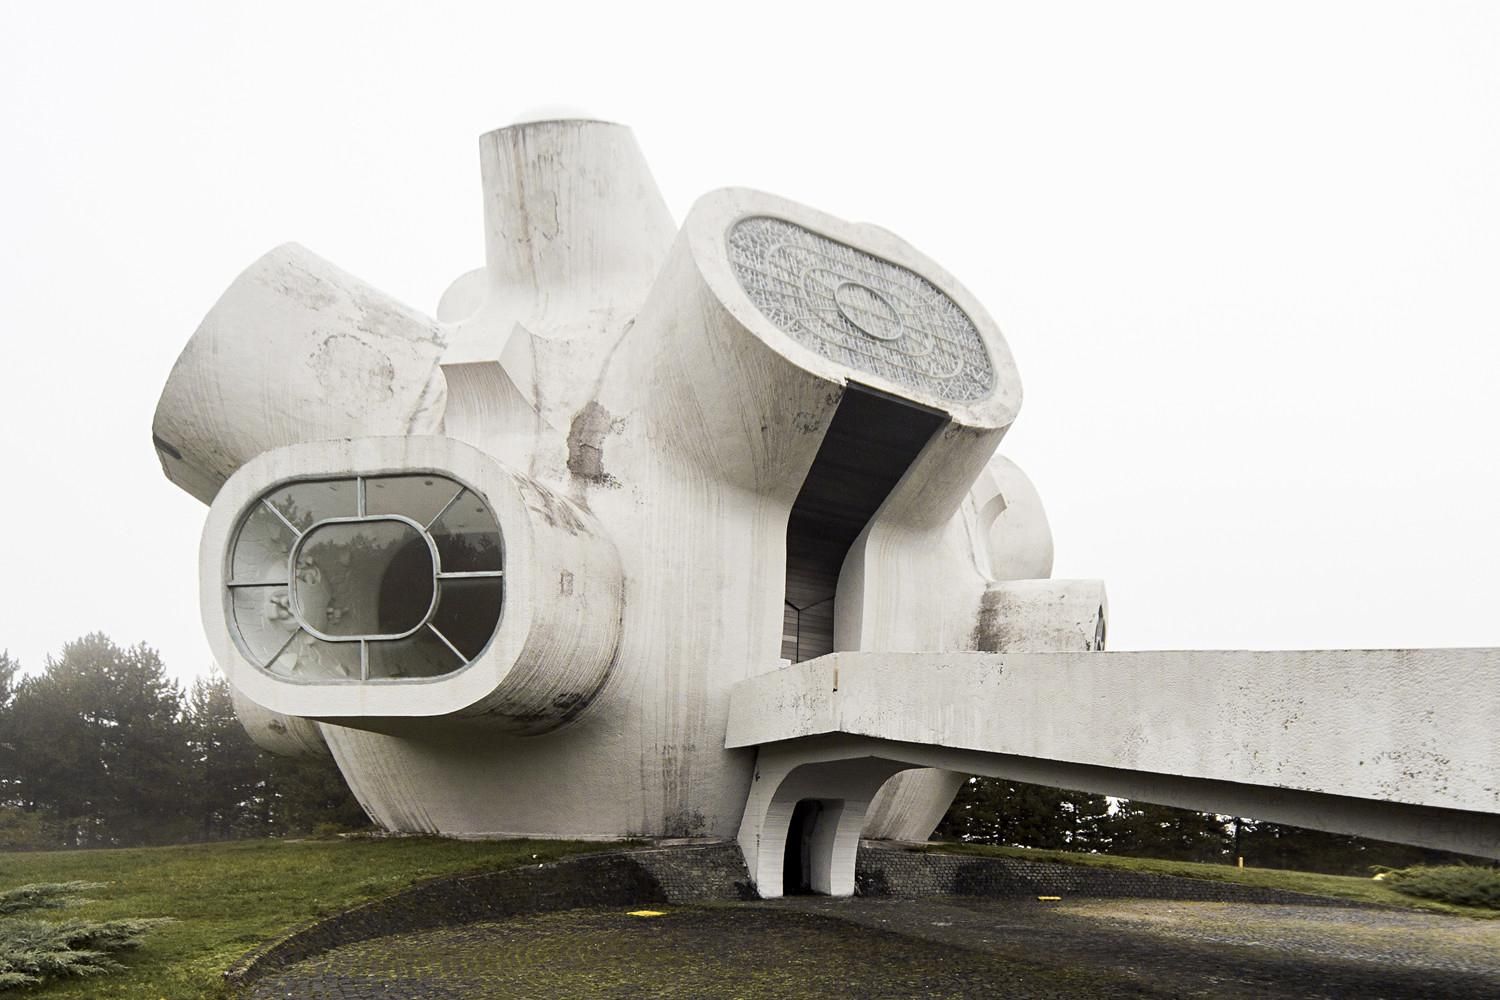 Футуристическая архитектура: фото странных монументальных сооружений 70-х годов